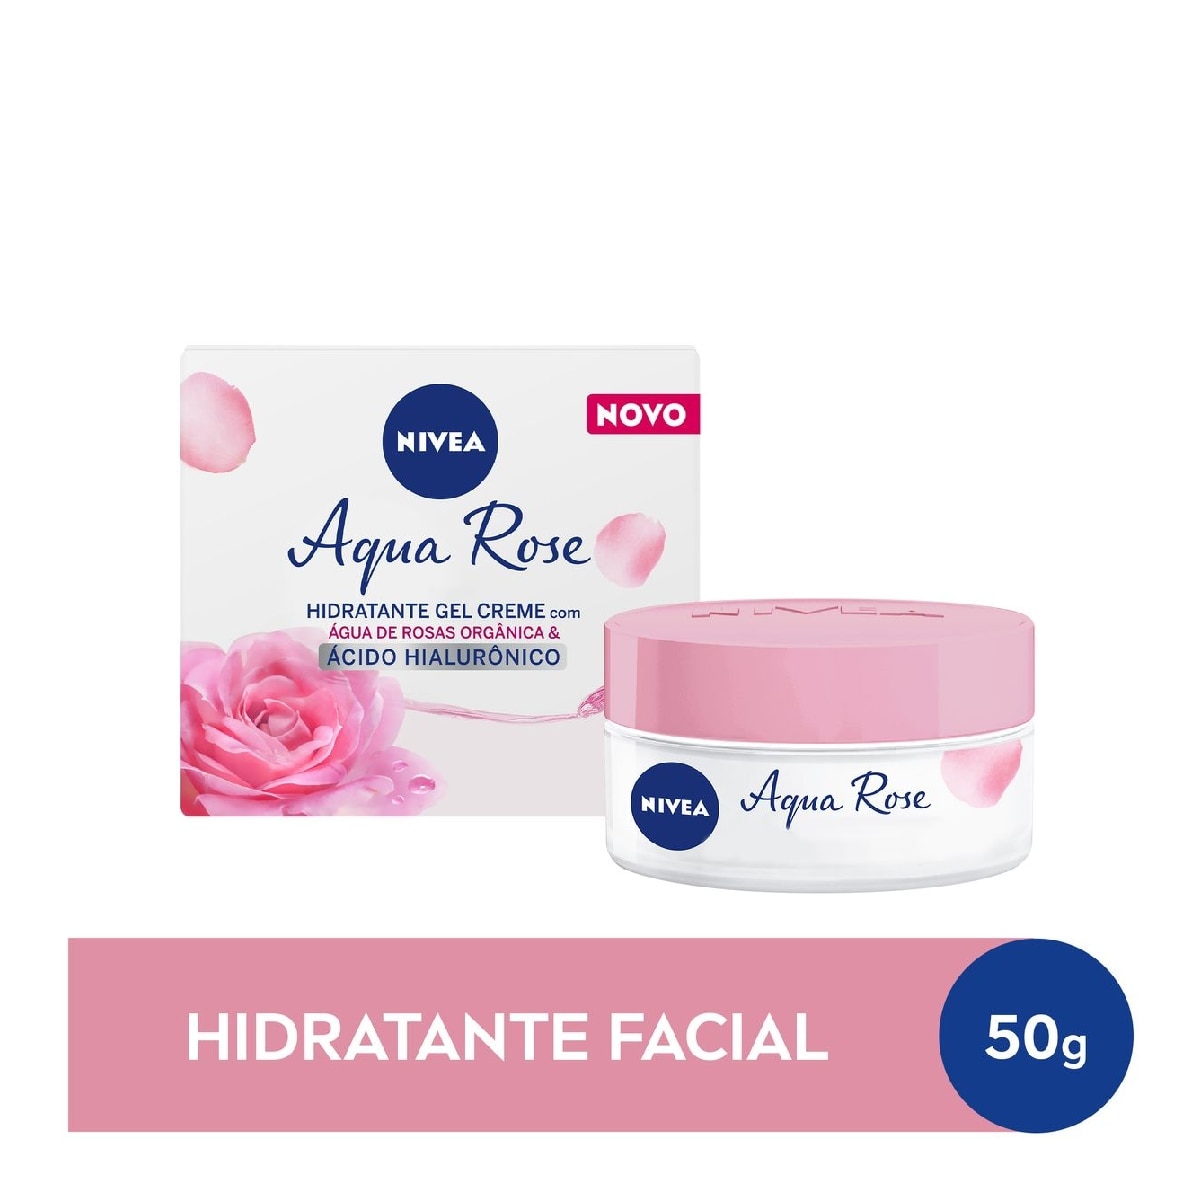 Gel Creme Facial Nivea Aqua Rose Agua de Rosas Organica & Acido Hialuronico 50g